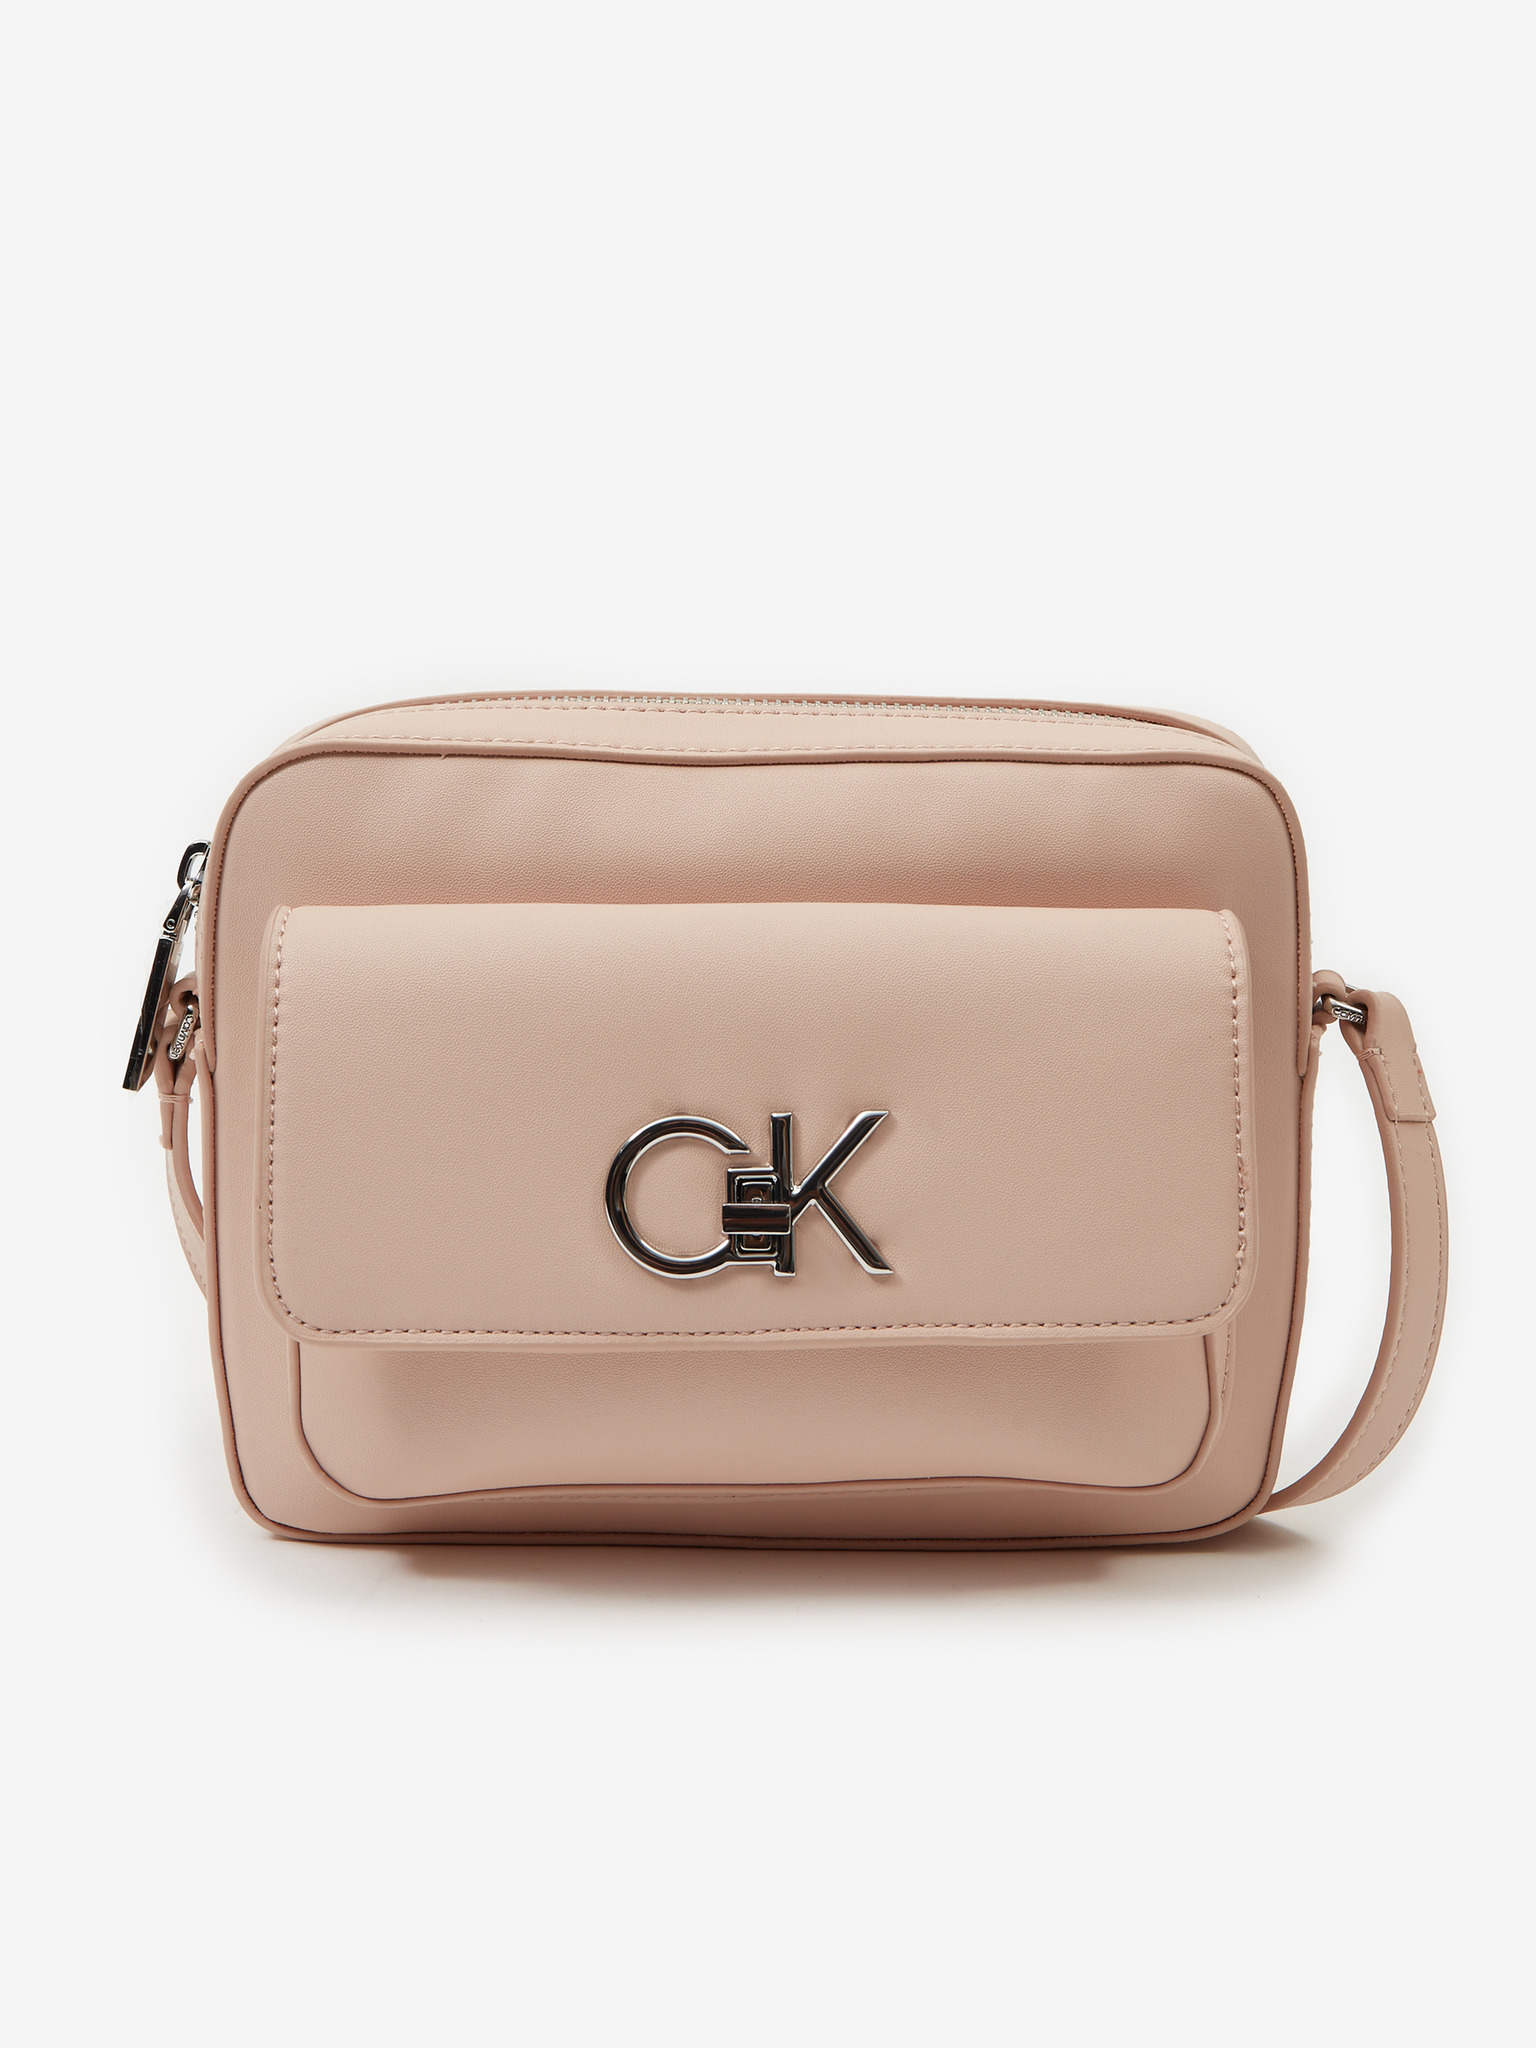 NWT Calvin Klein Double Zip Crossbody | Calvin klein bag, Zip crossbody, Crossbody  bag